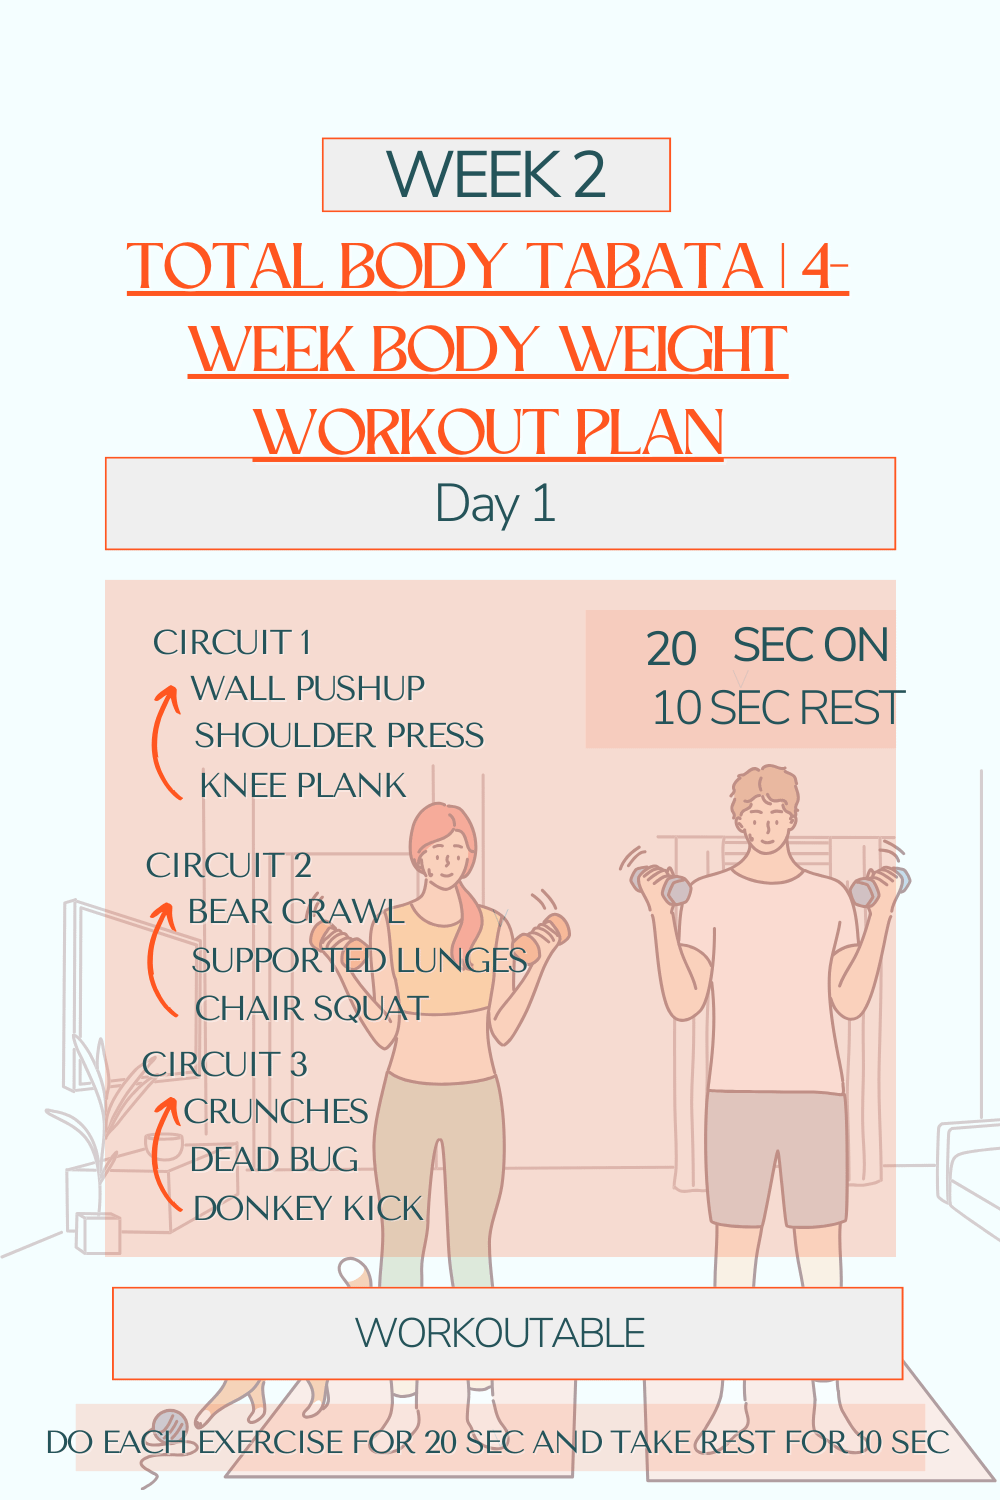 Total Body Tabata - 4-Week Body Weight Workout Plan